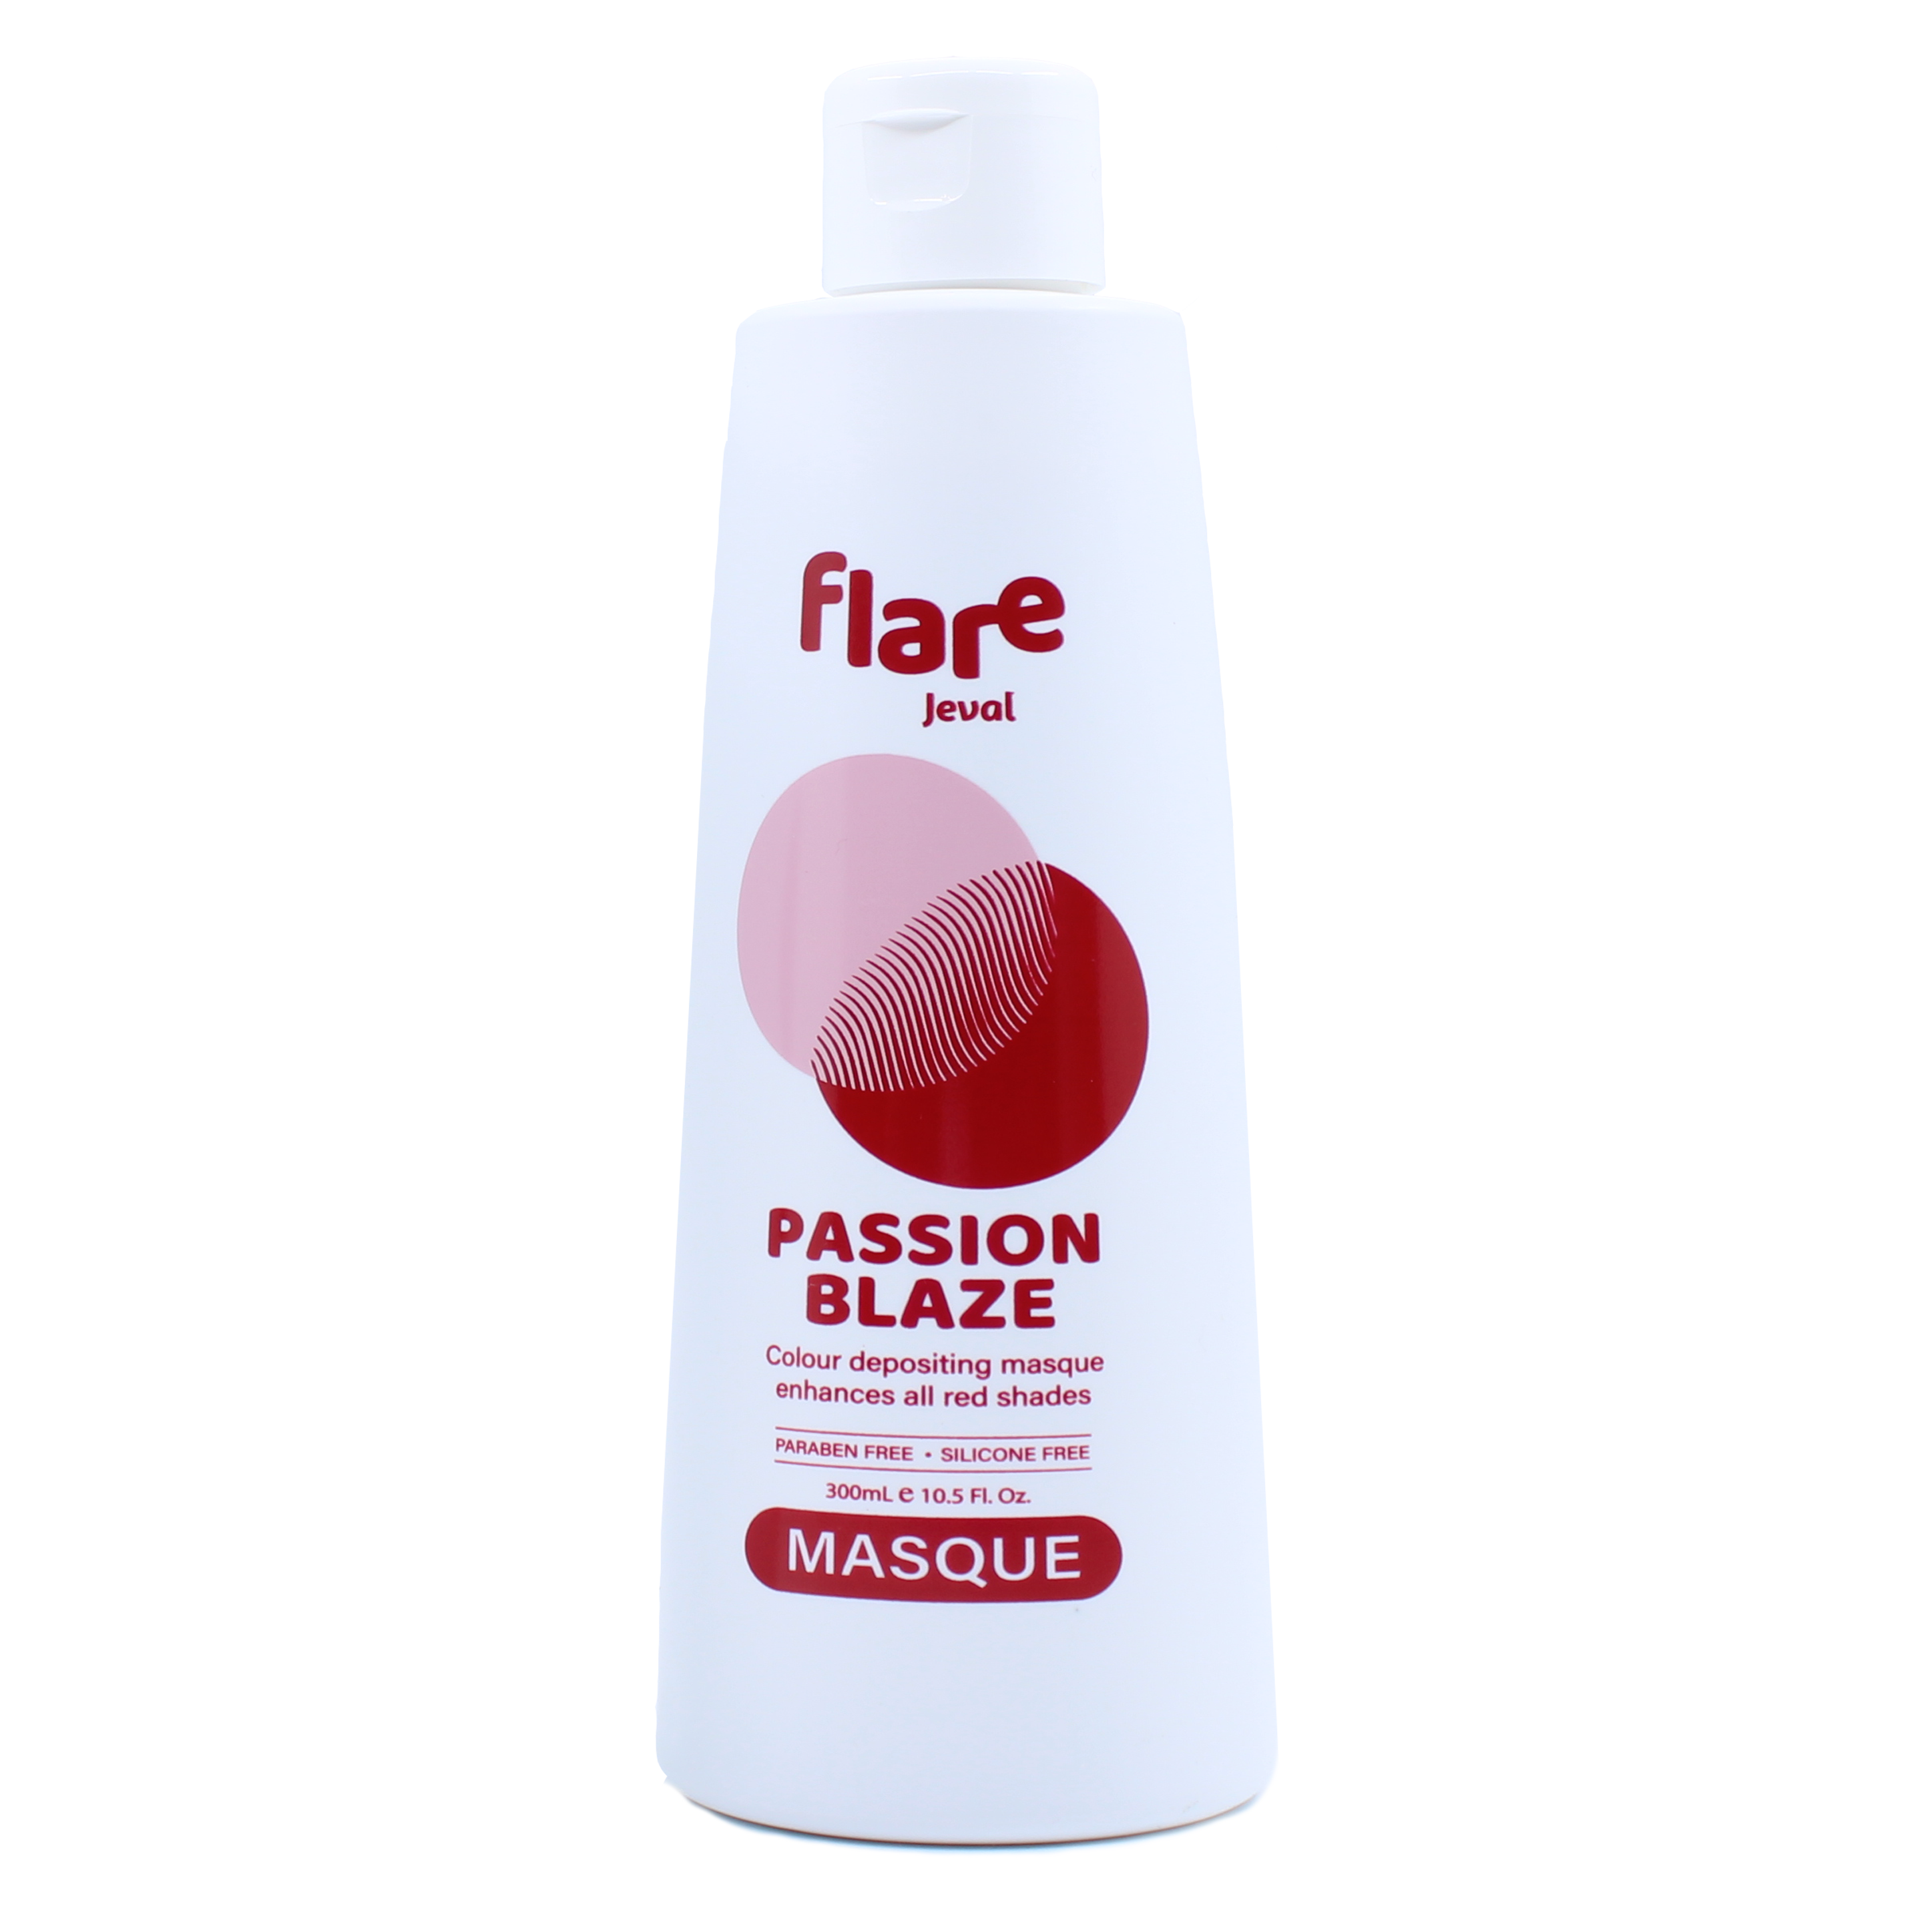 Flare Passion Blaze Masque 300ml